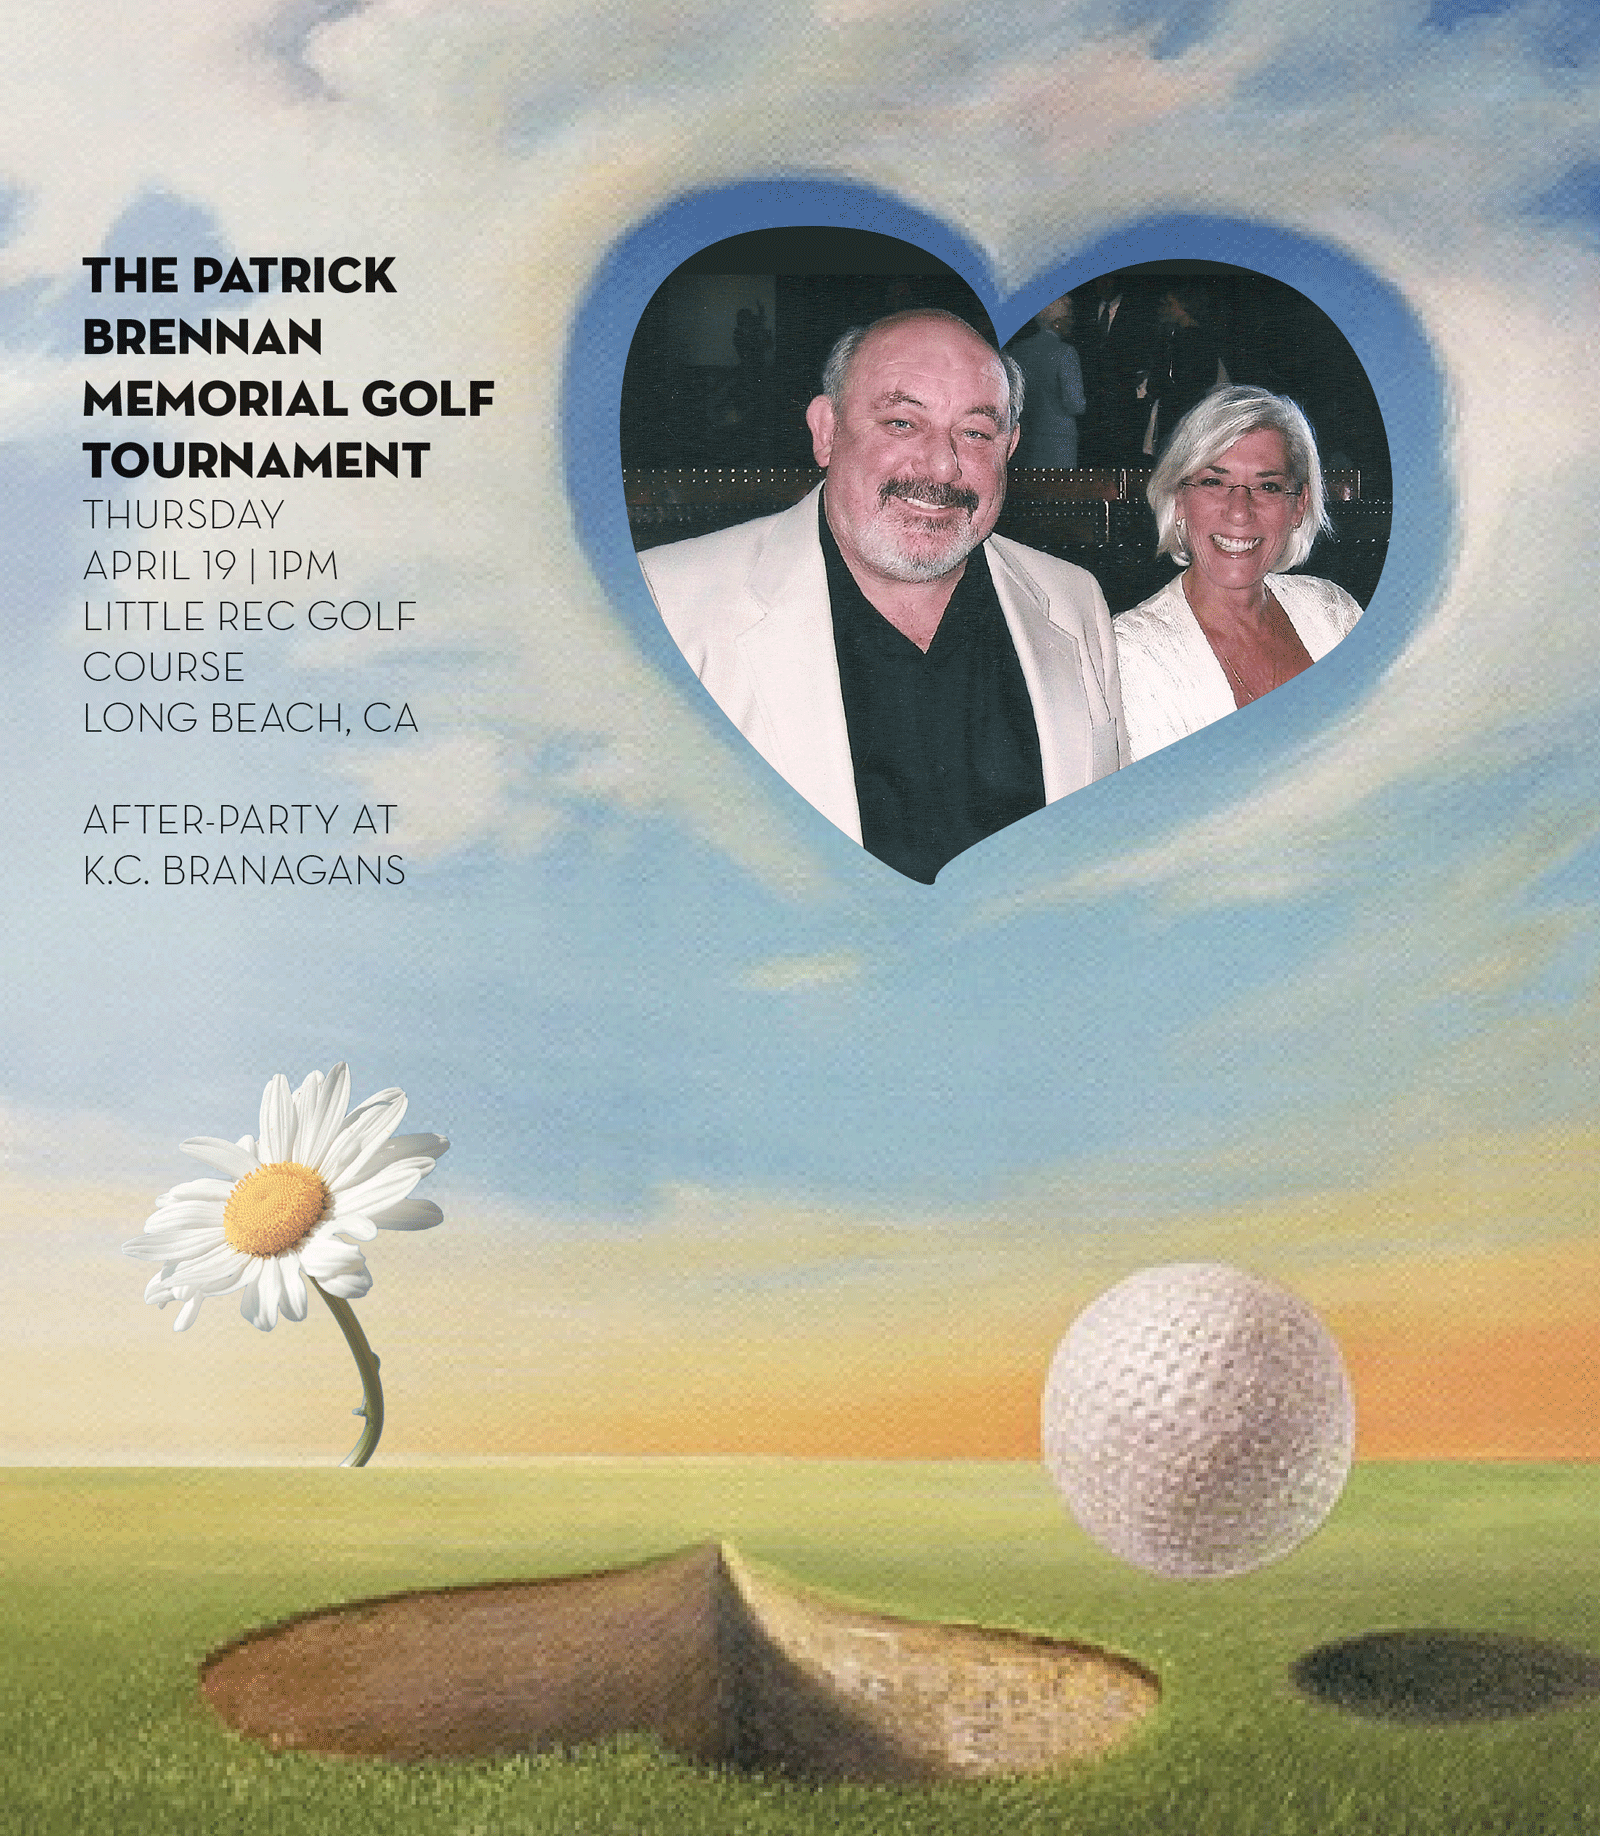 The Annual Patrick Brennan Memorial Golf Tournament